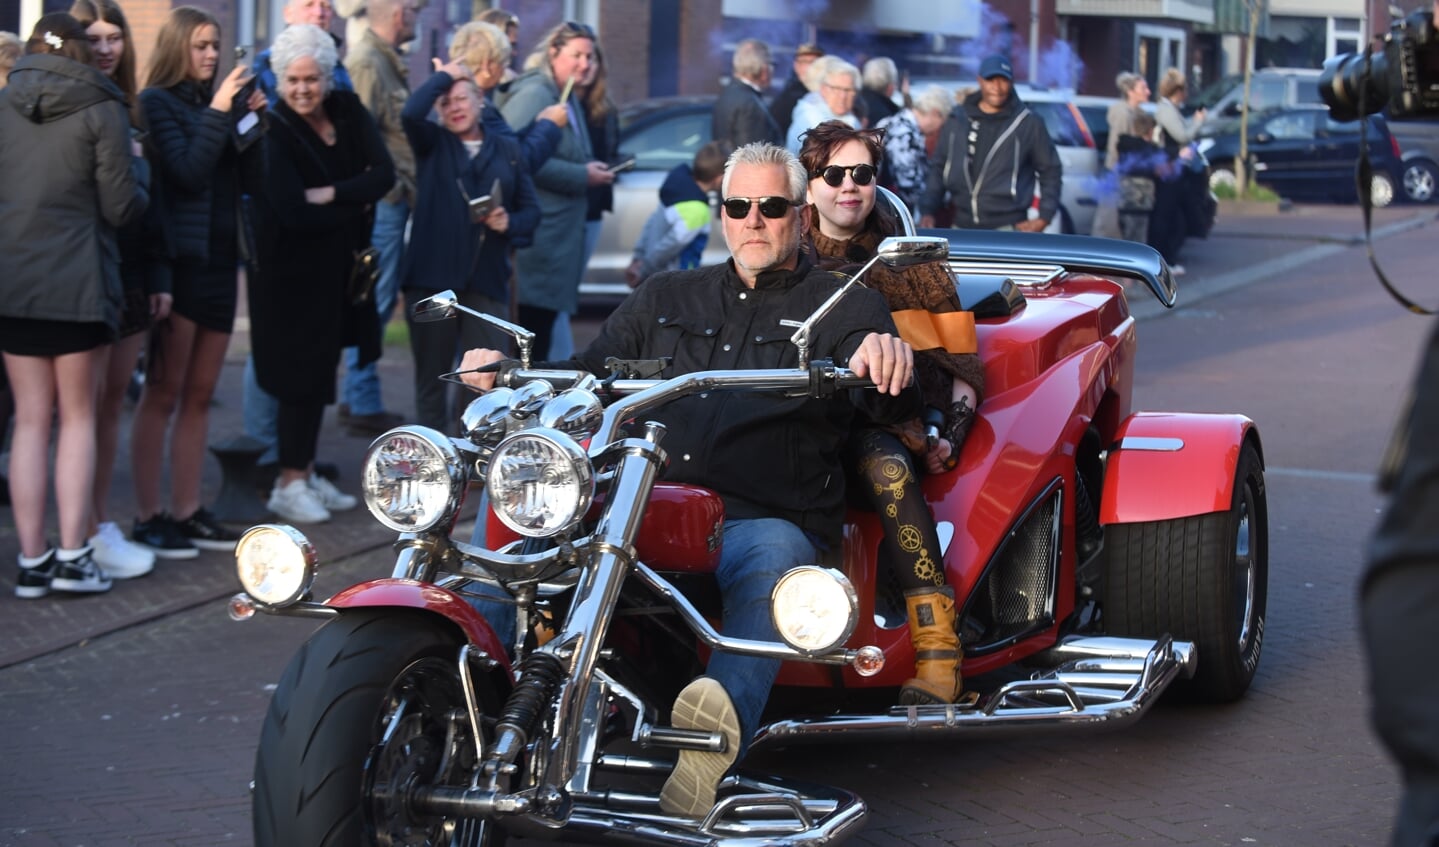 Puk reed een zegetocht door IJmuiden op een rode trike, begeleid door honderden bikers. 